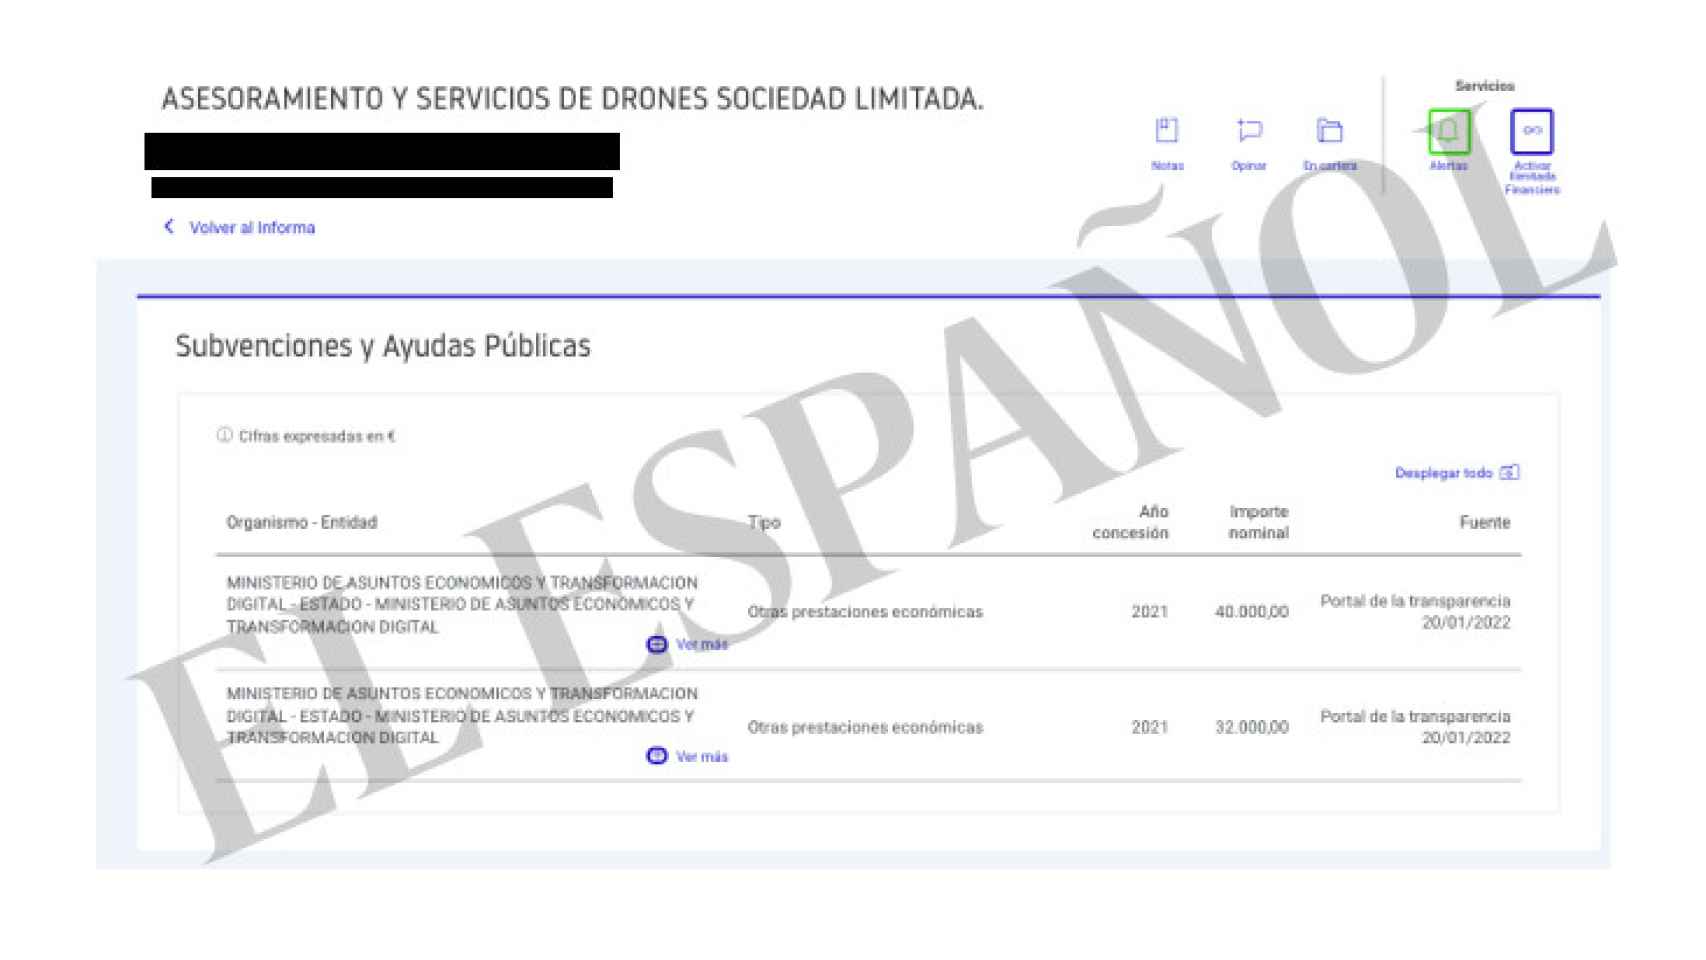 Subvenciones a la firma del dueño de la empresa de drones, Suárez Estévez.